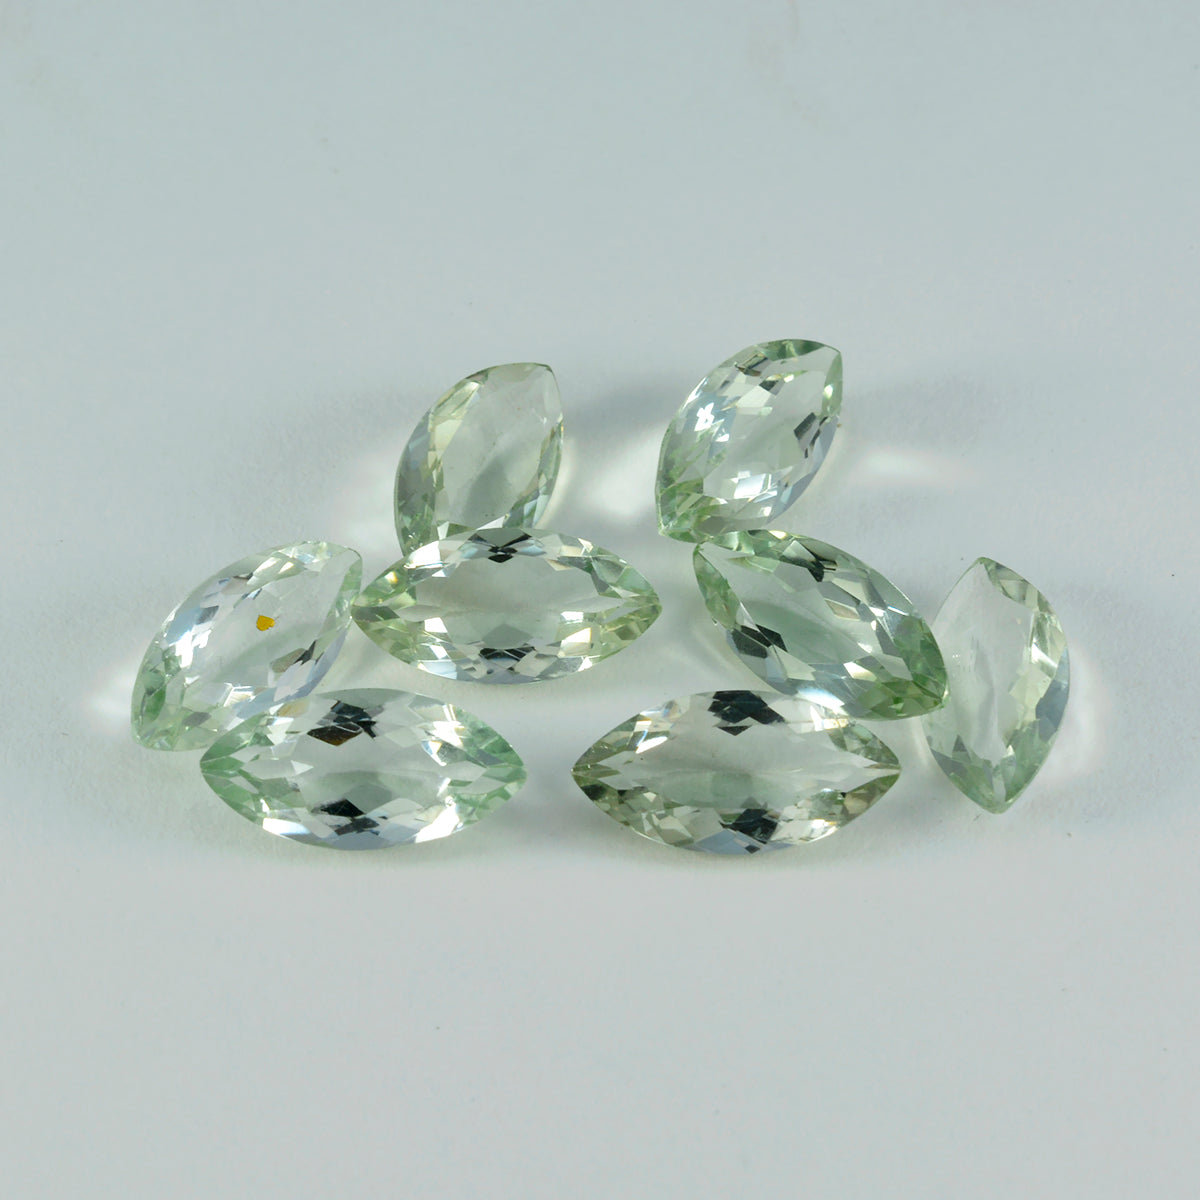 riyogems 1шт зеленый аметист ограненный 8x16 мм форма маркиза прекрасное качество россыпь драгоценных камней